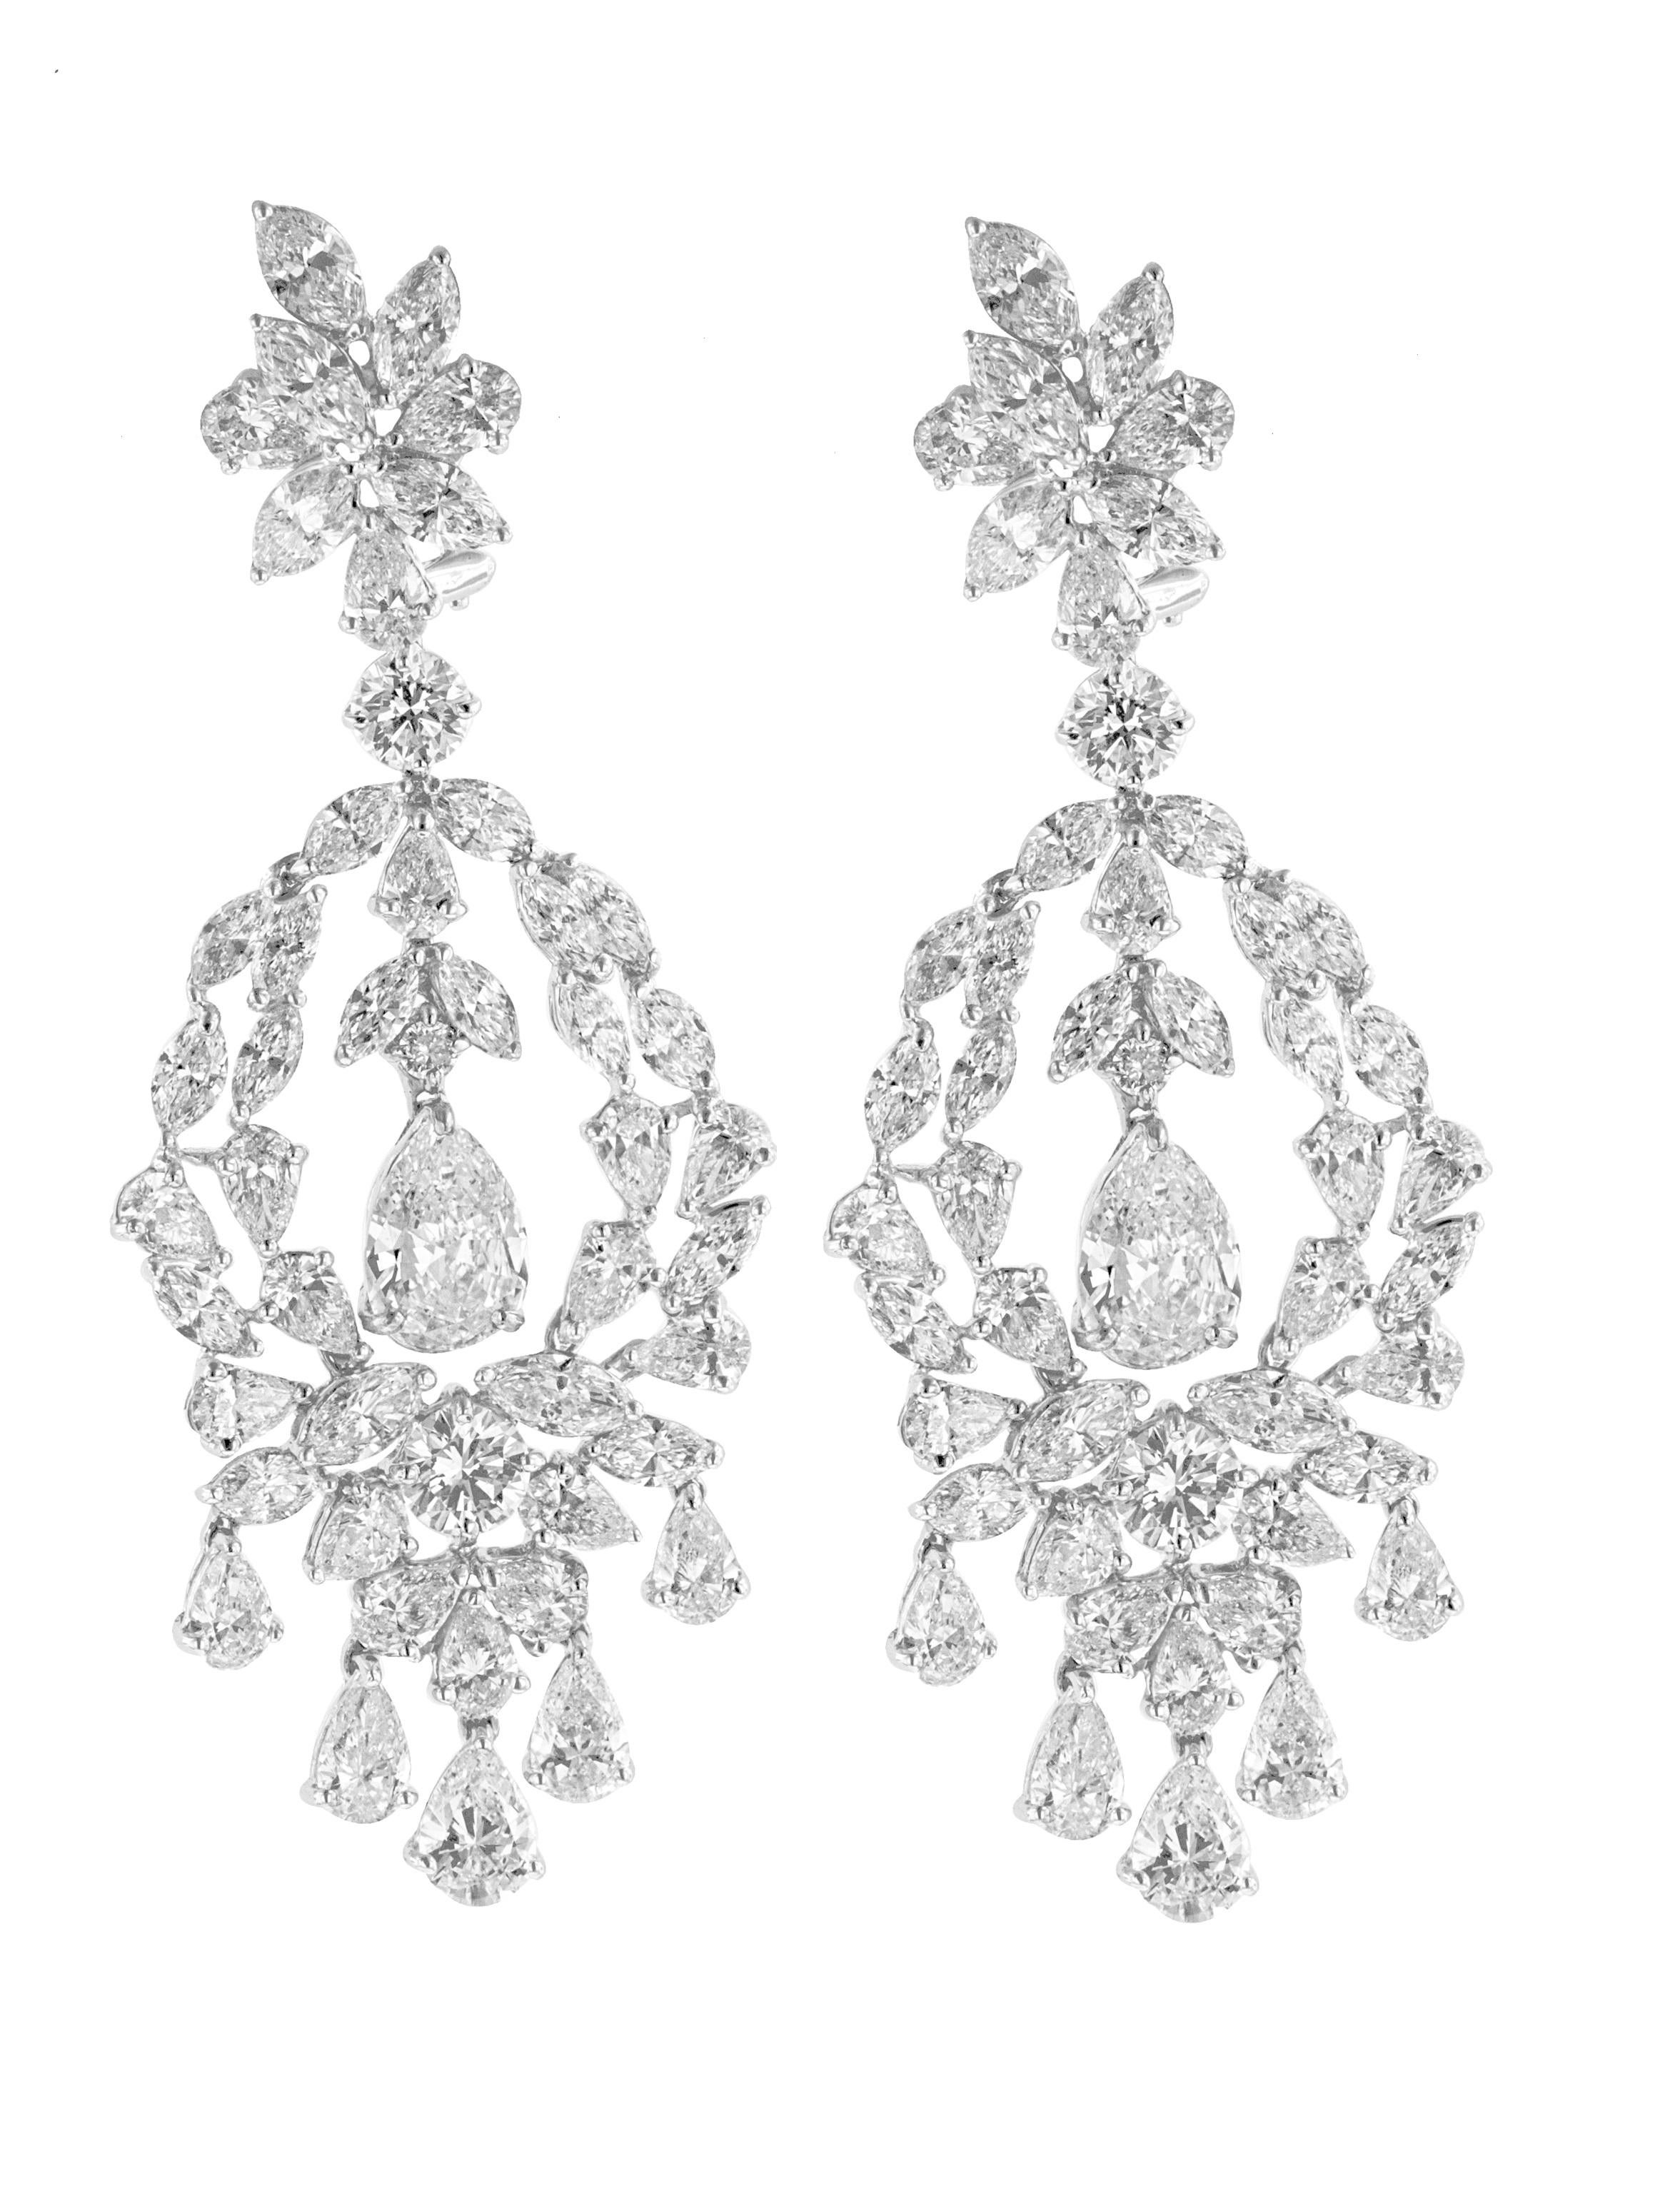 1899 earrings